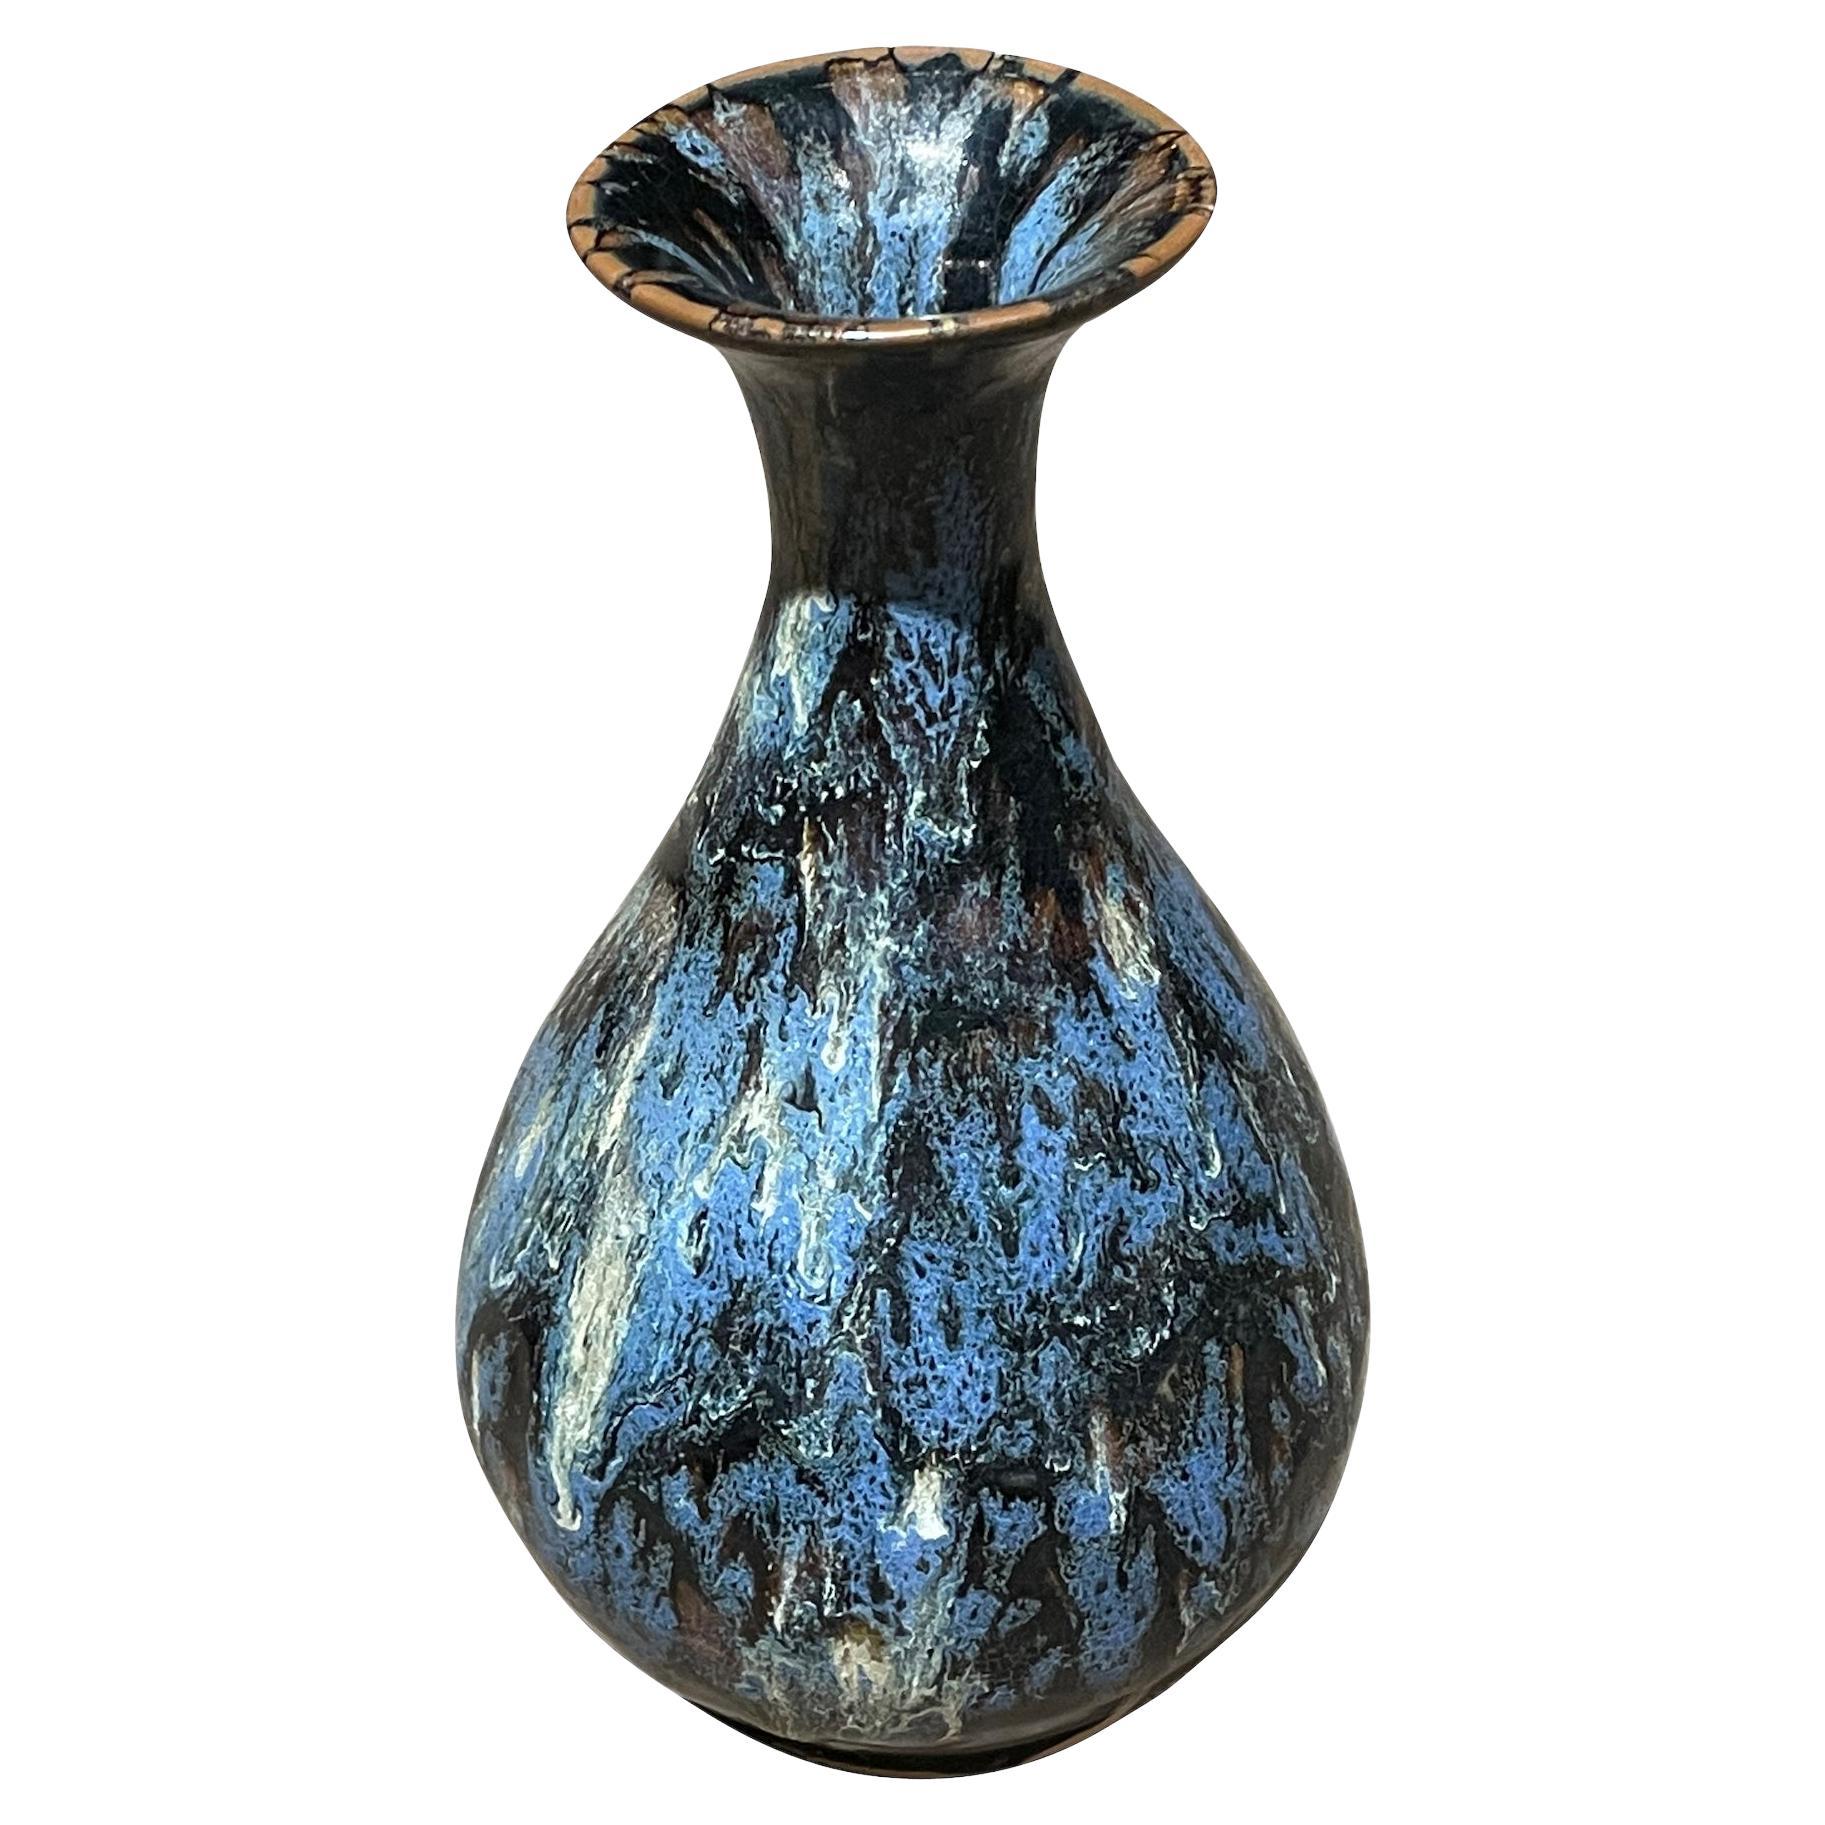 Black, Blue and White Splatter Glaze, Tulip Shape Vase, China, Contemporary